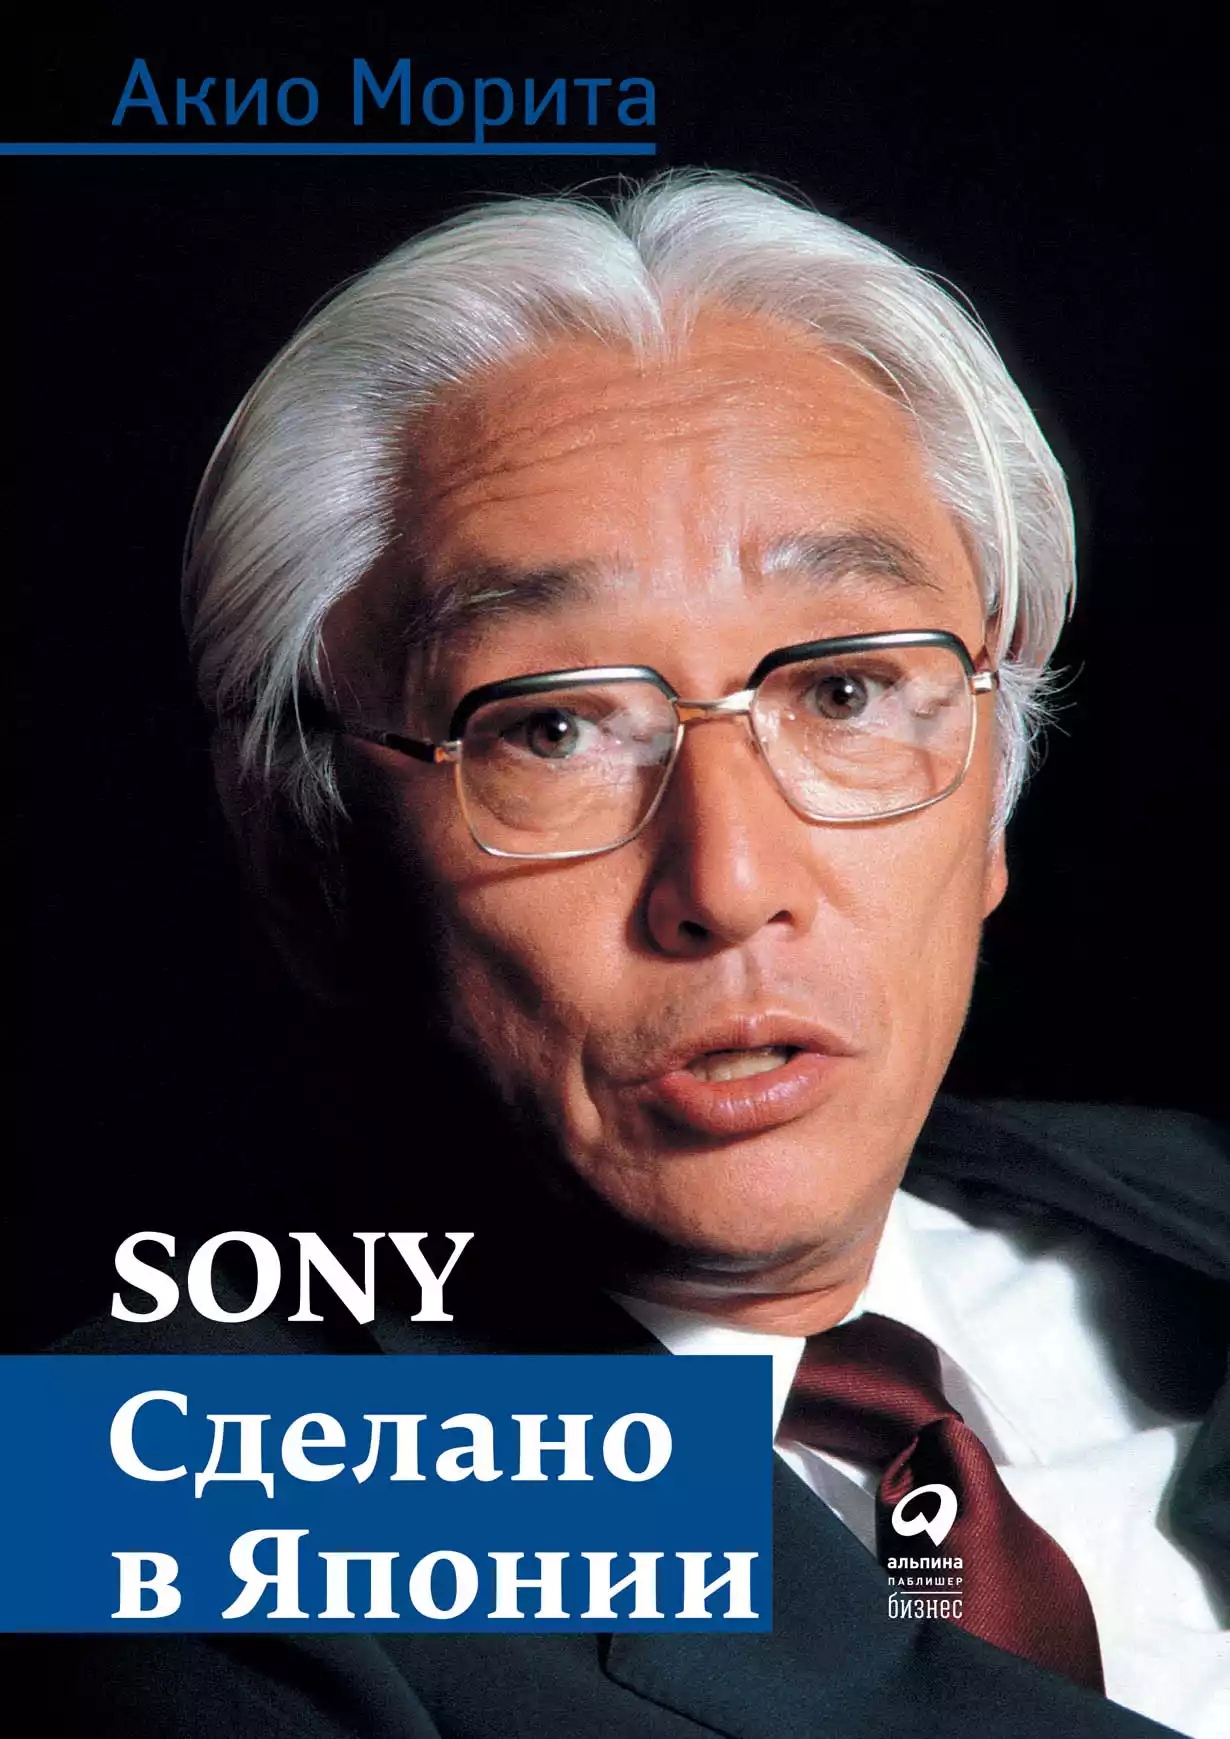  Sony: Cделано в Японии